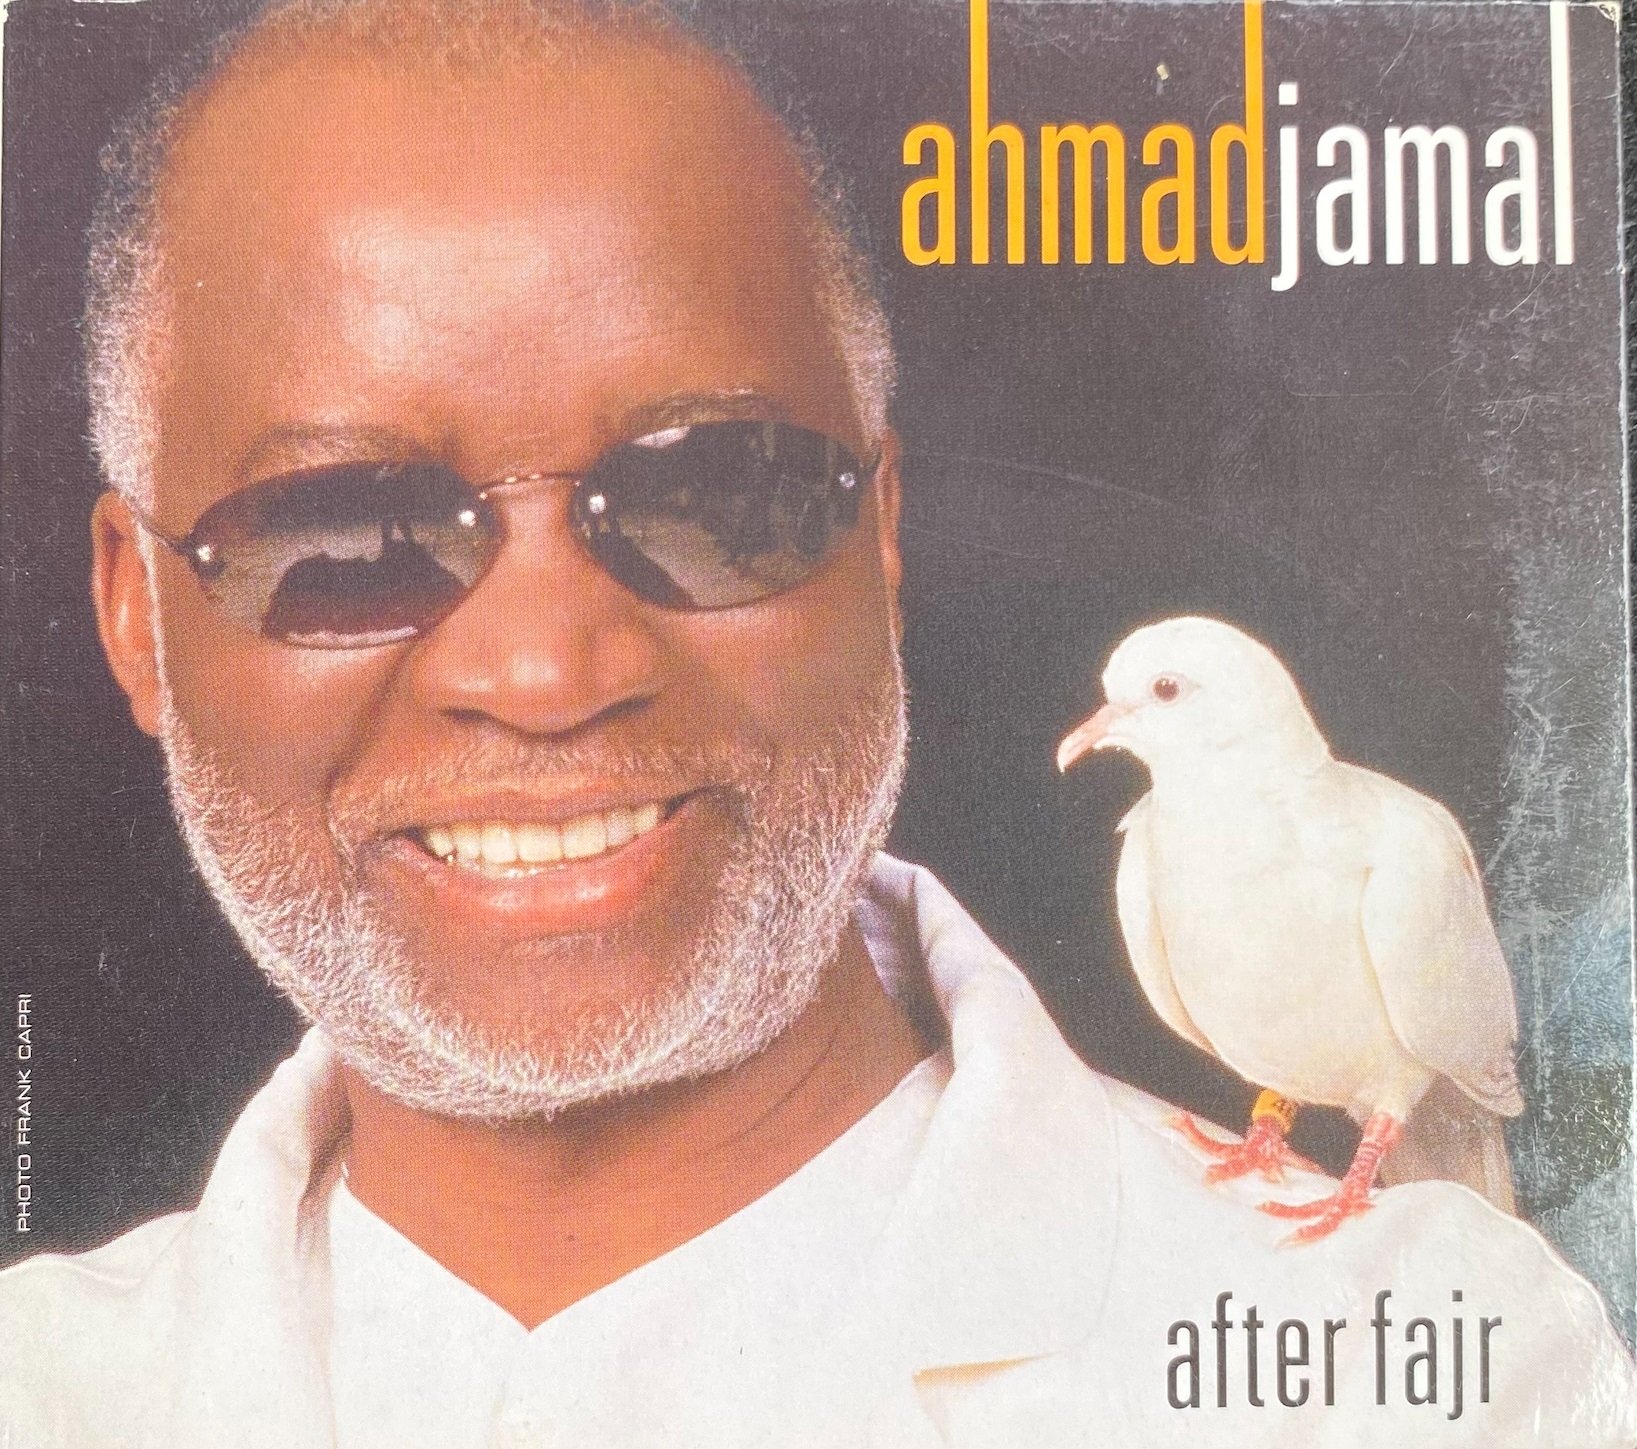 Sampul album Ahmad Jamal 